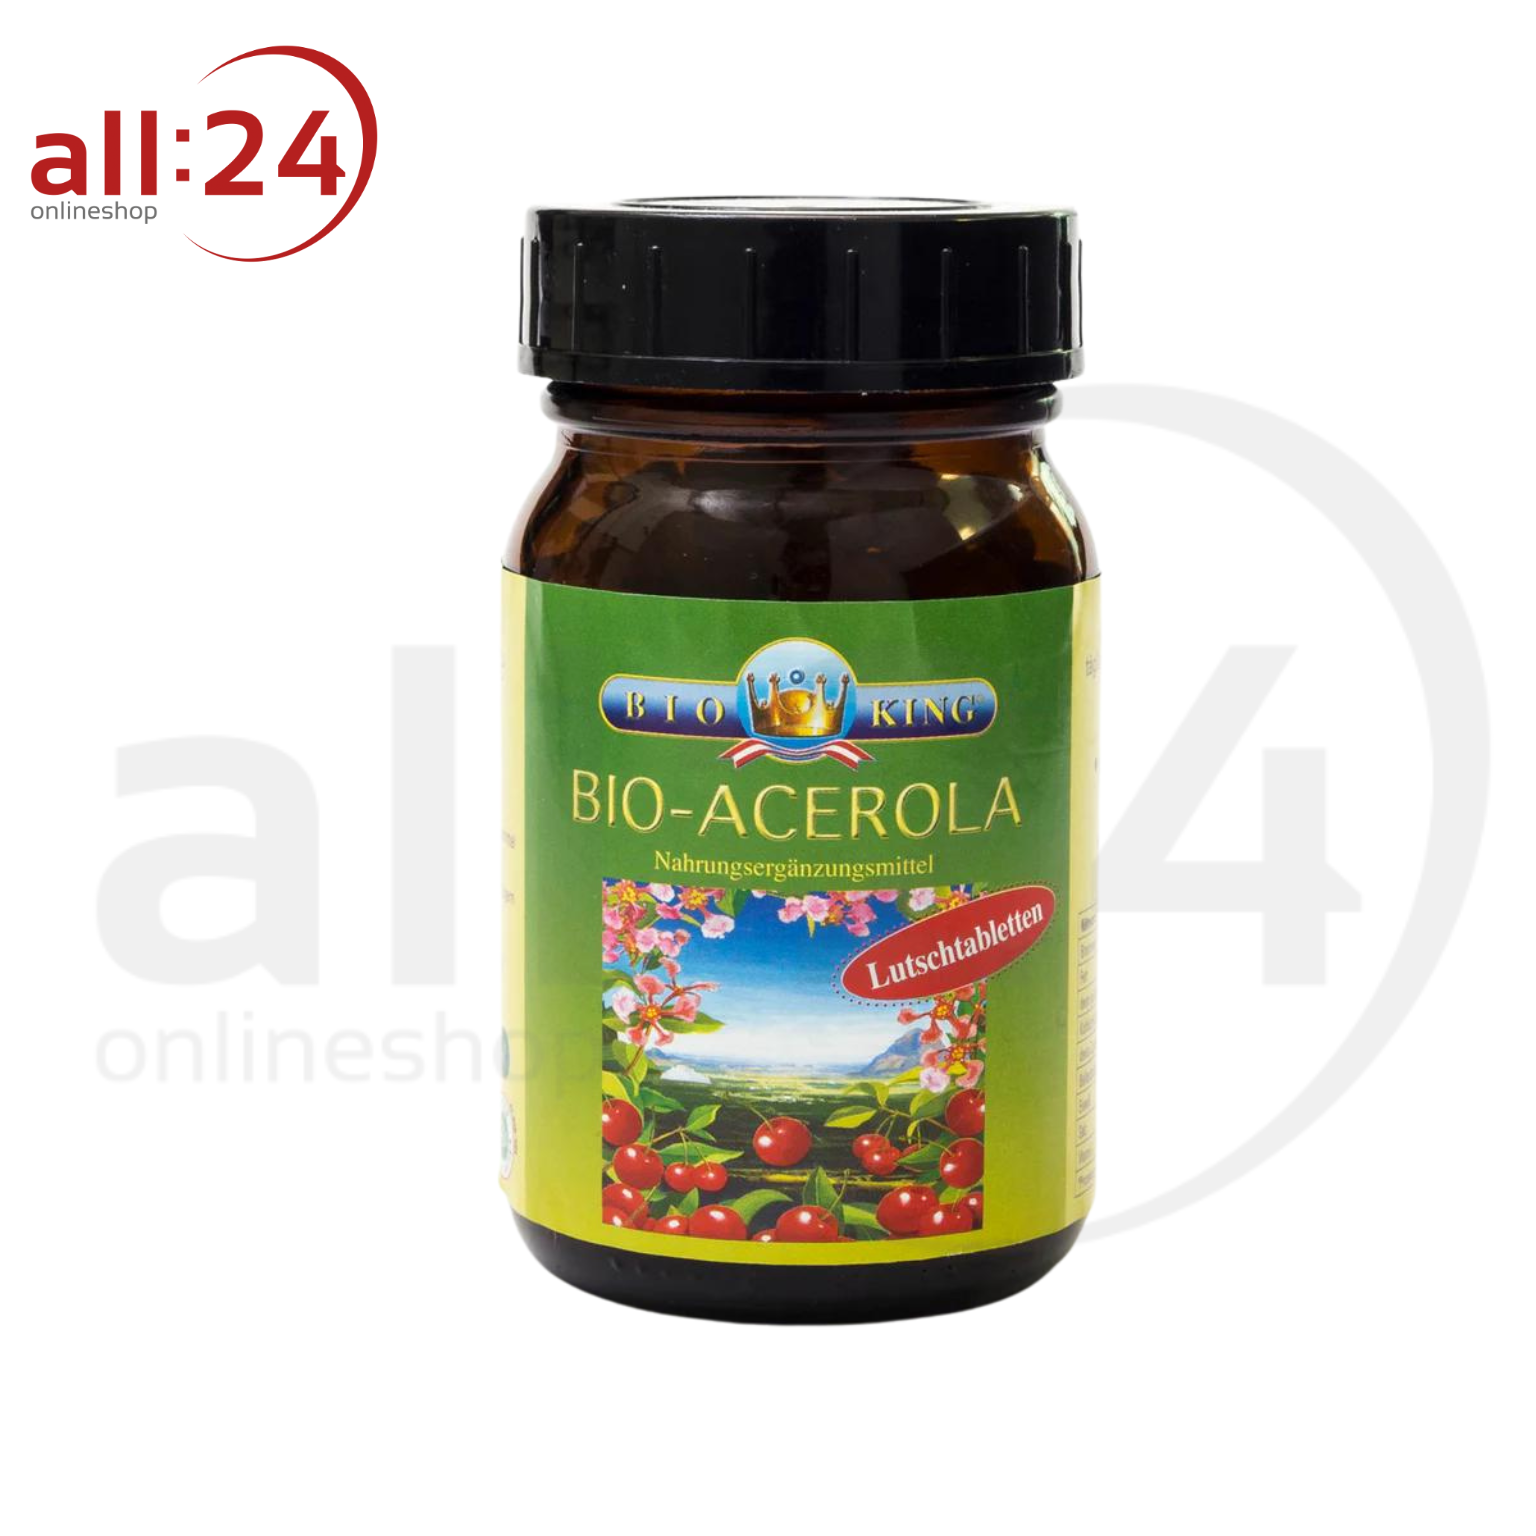 BioKing Bio Acerola Lutschtabletten, 125g-250g 